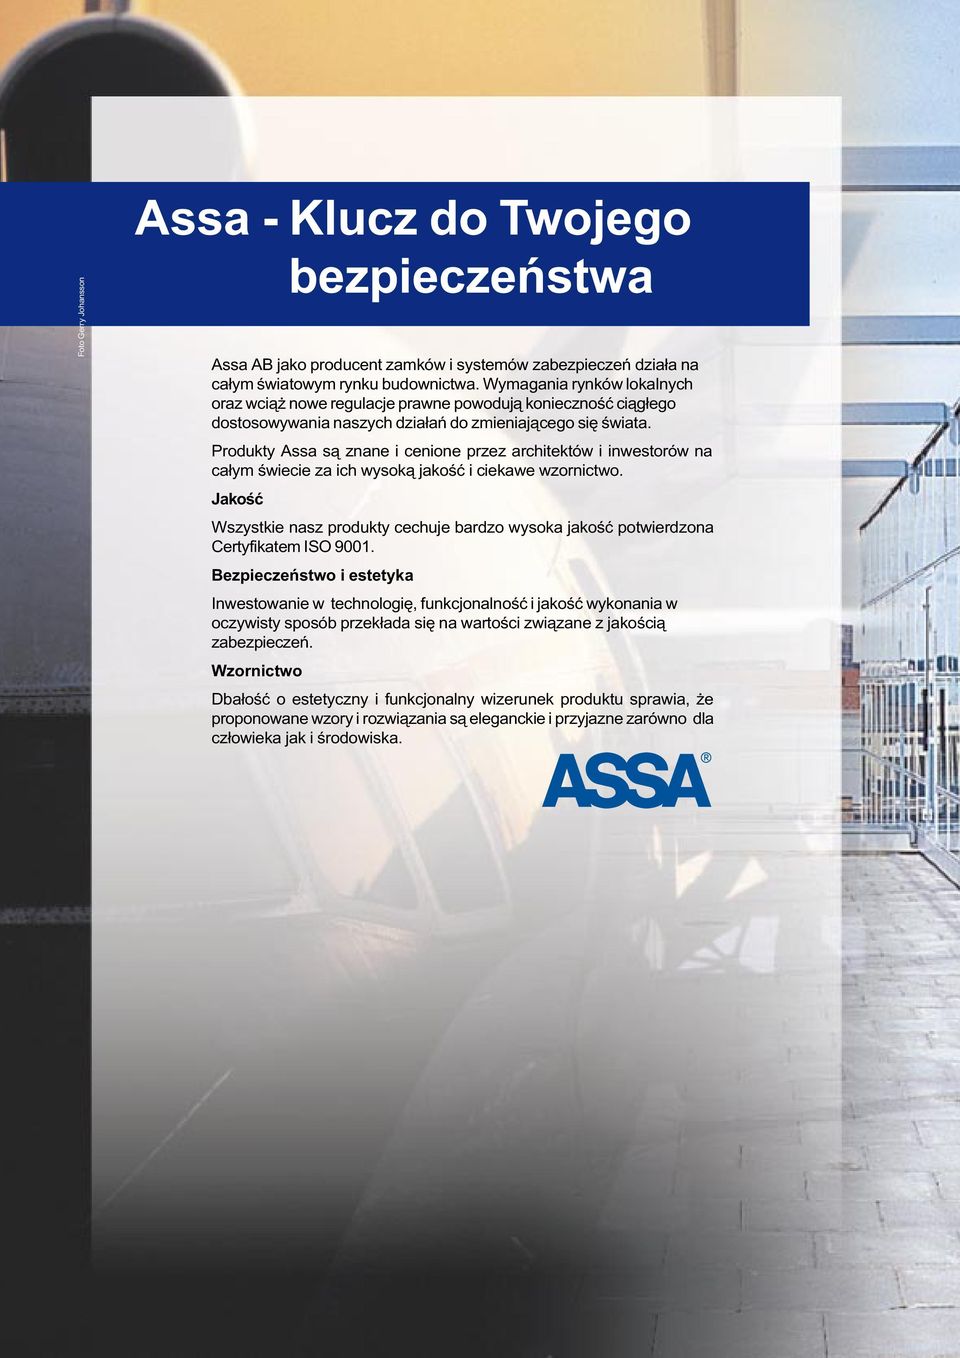 Produkty Assa s¹ znane i cenione przez architektów i inwestorów na ca³ym œwiecie za ich wysok¹ jakoœæ i ciekawe wzornictwo.